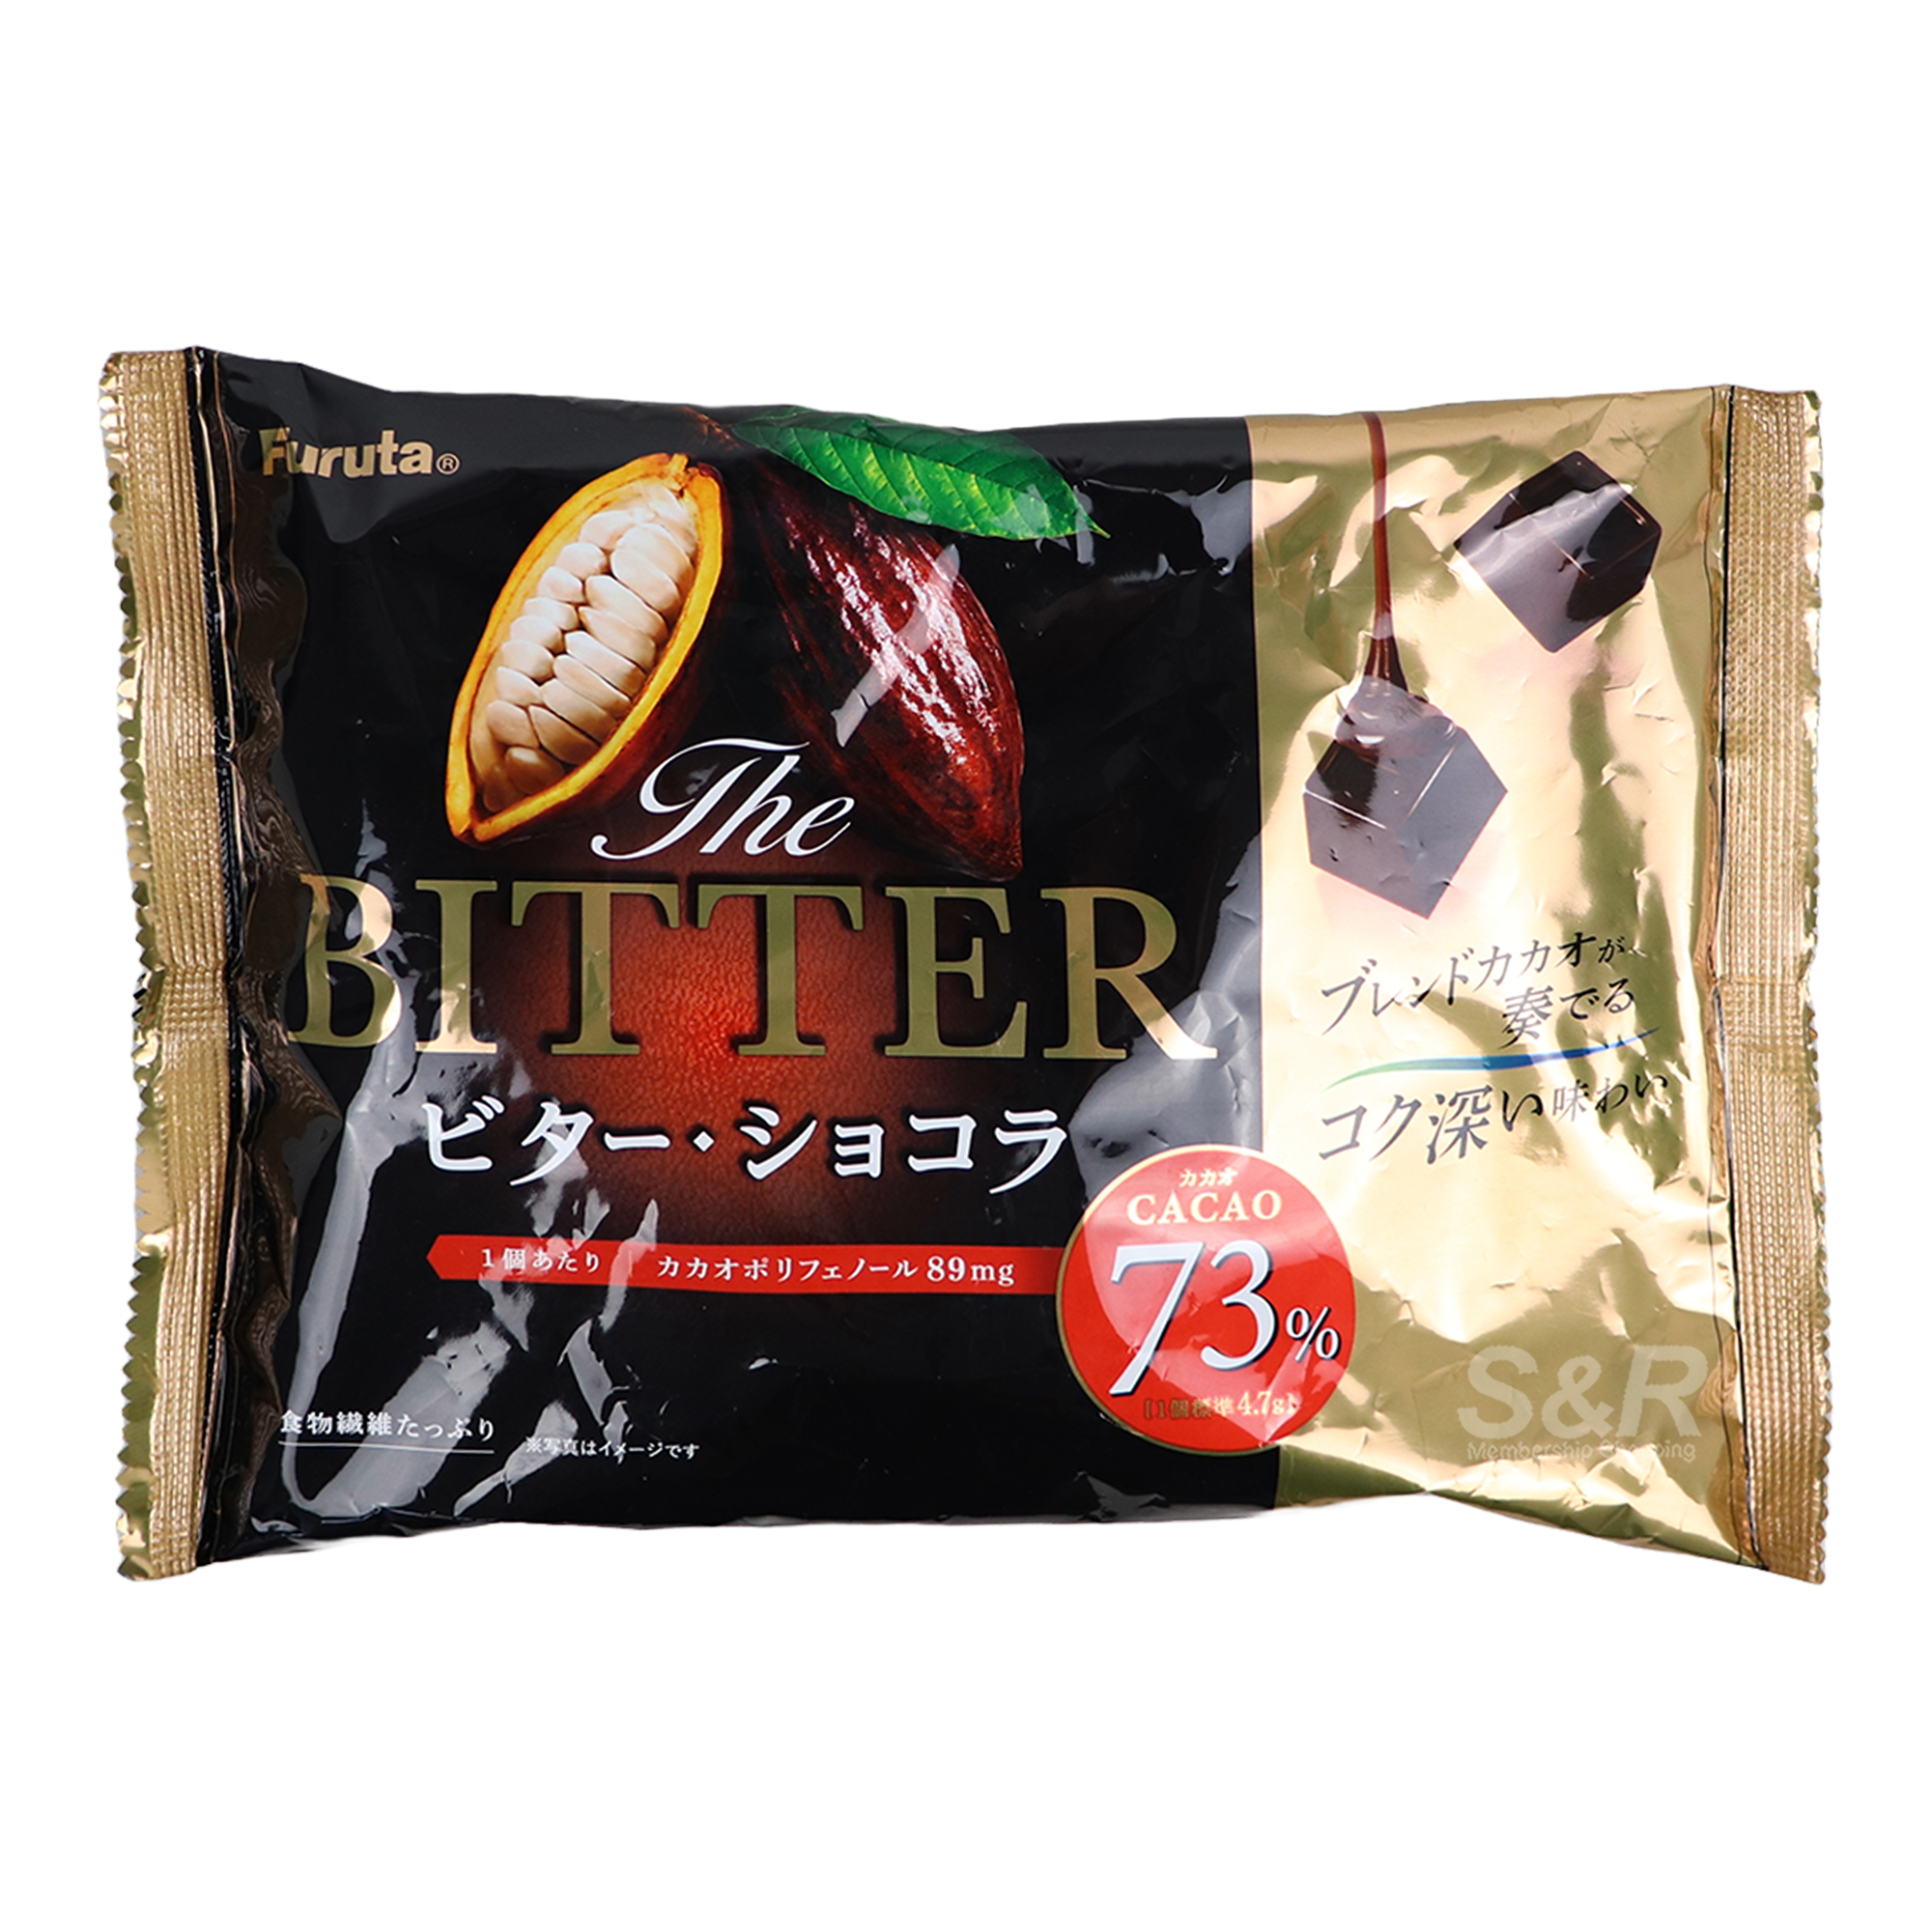 Furuta Bitter Chocolate 141g